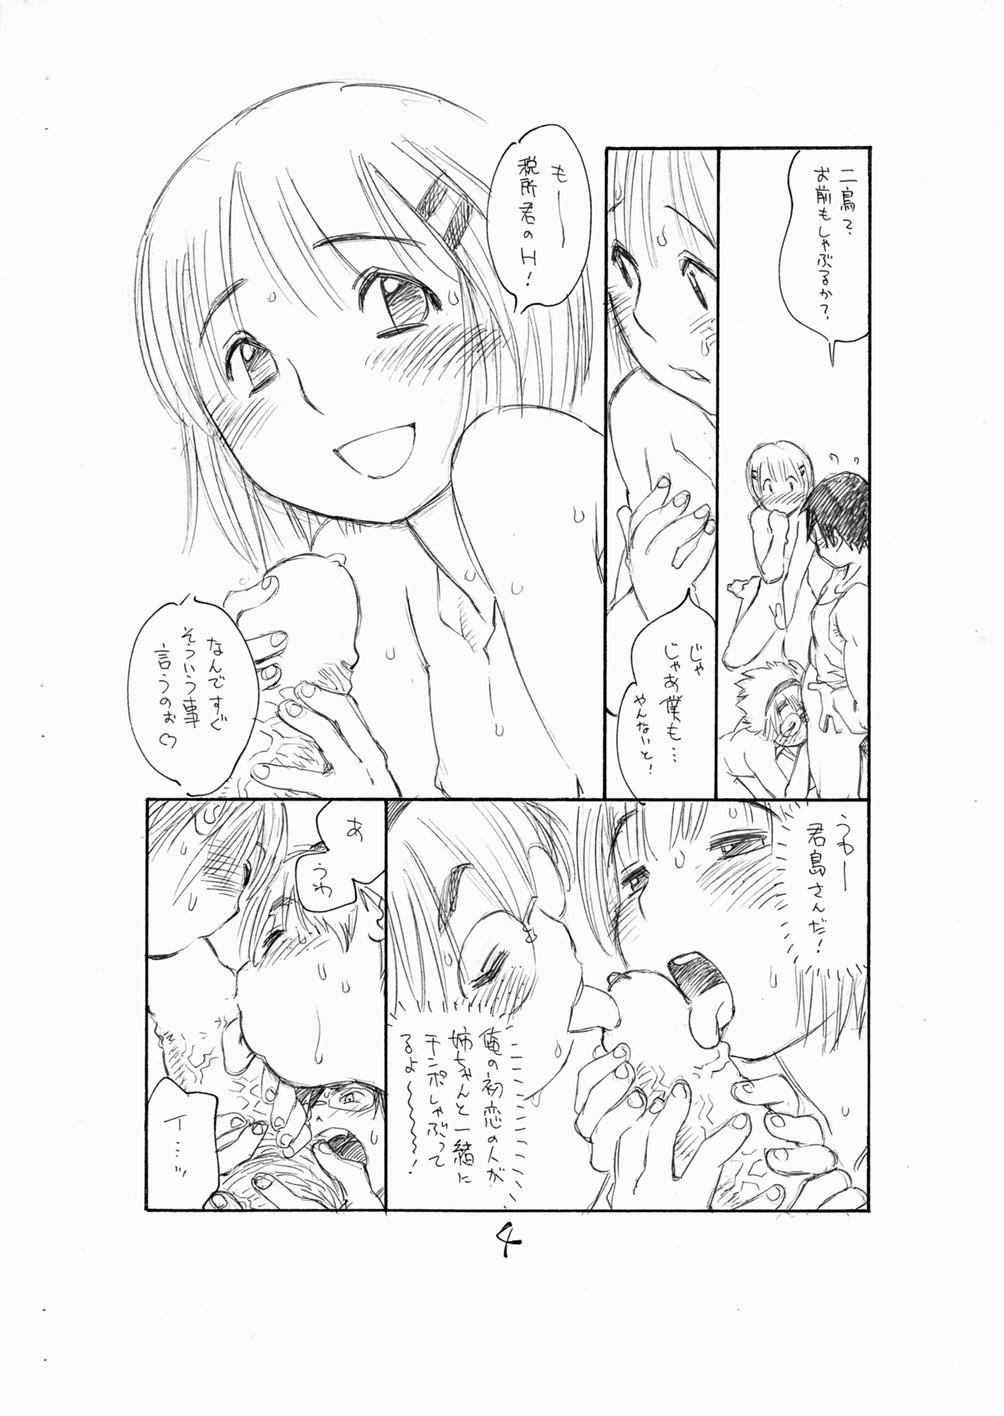 Big Penis Bokutachi Otokonoko 3 - Hourou musuko Abuse - Page 6